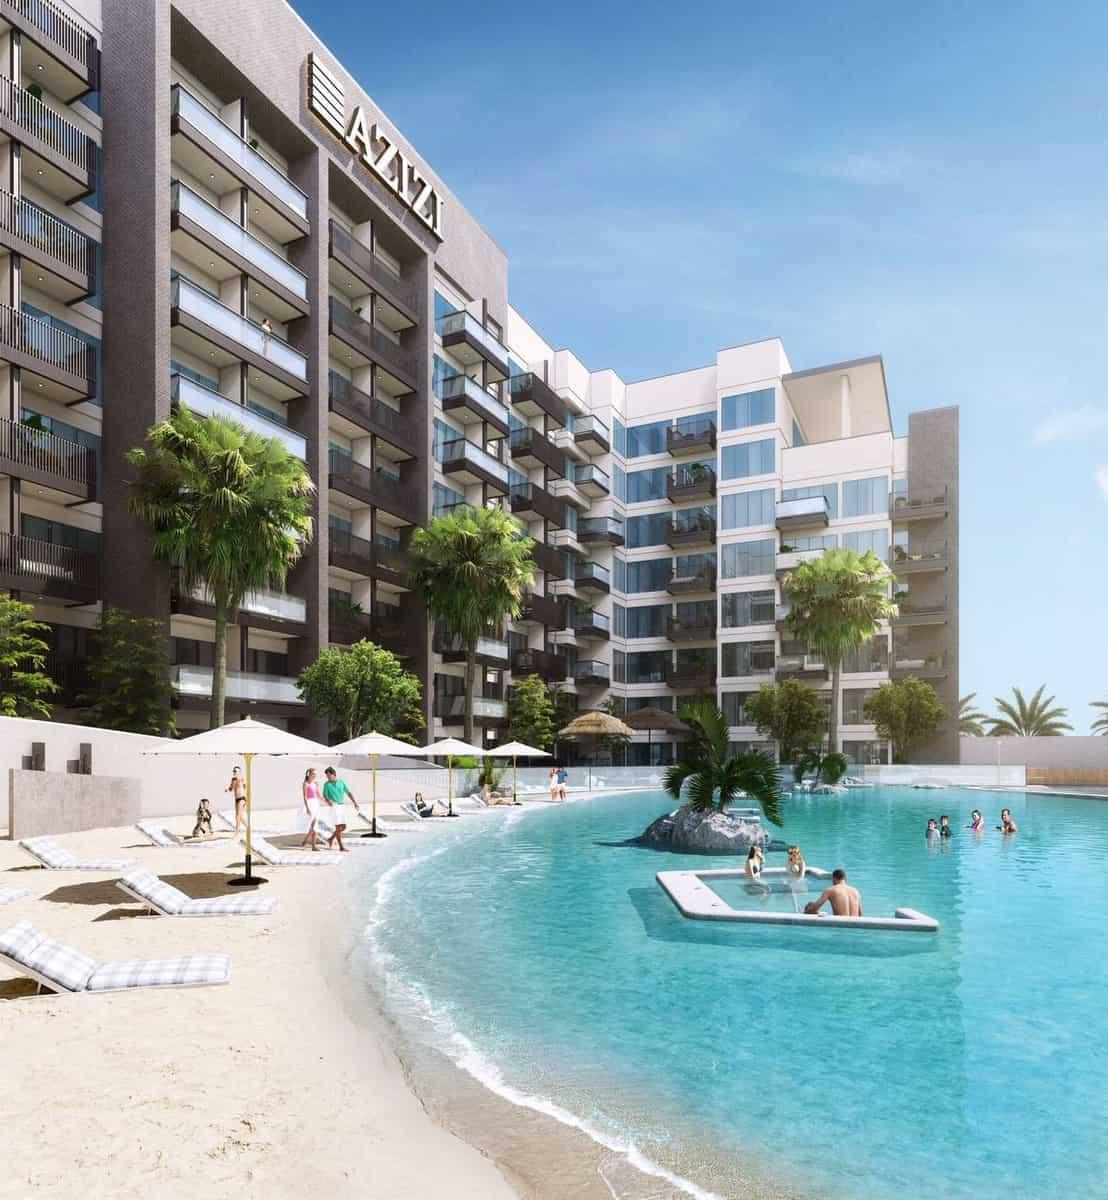 Beach Oasis studio for sale in Dubai residential complex - Студия на продажу в Beach Oasis Dubai